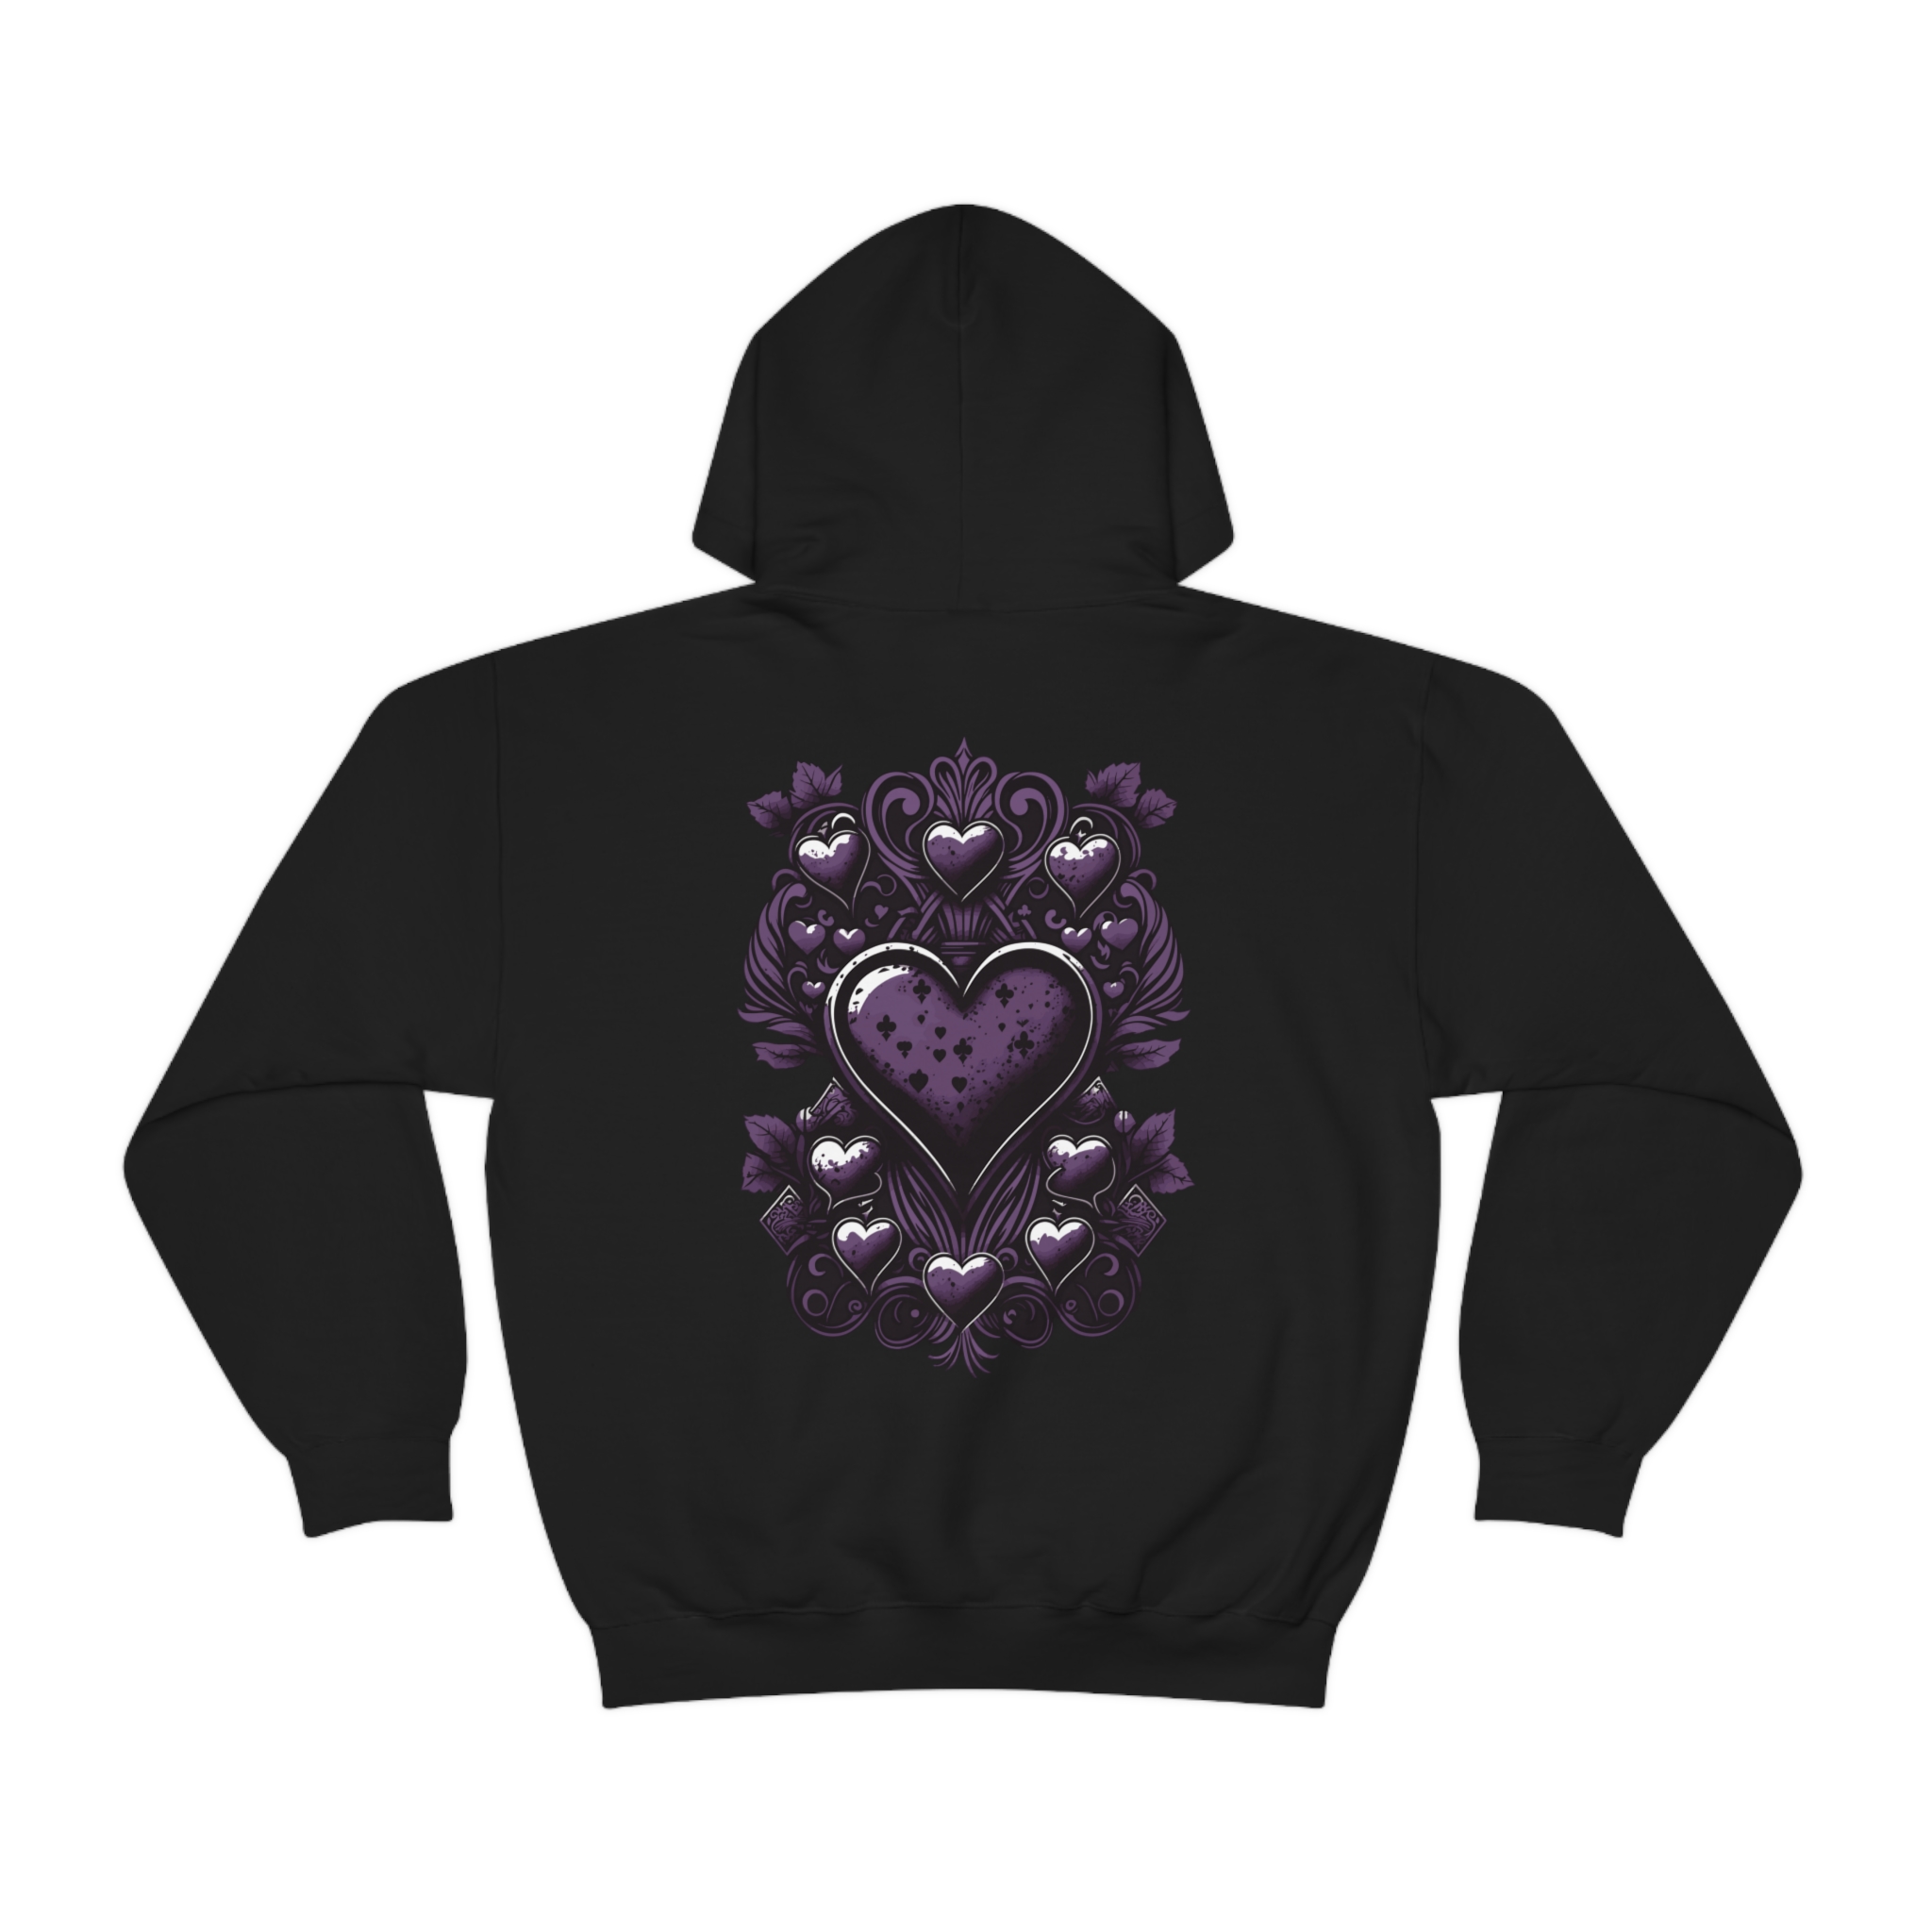 9 of hearts hoodie